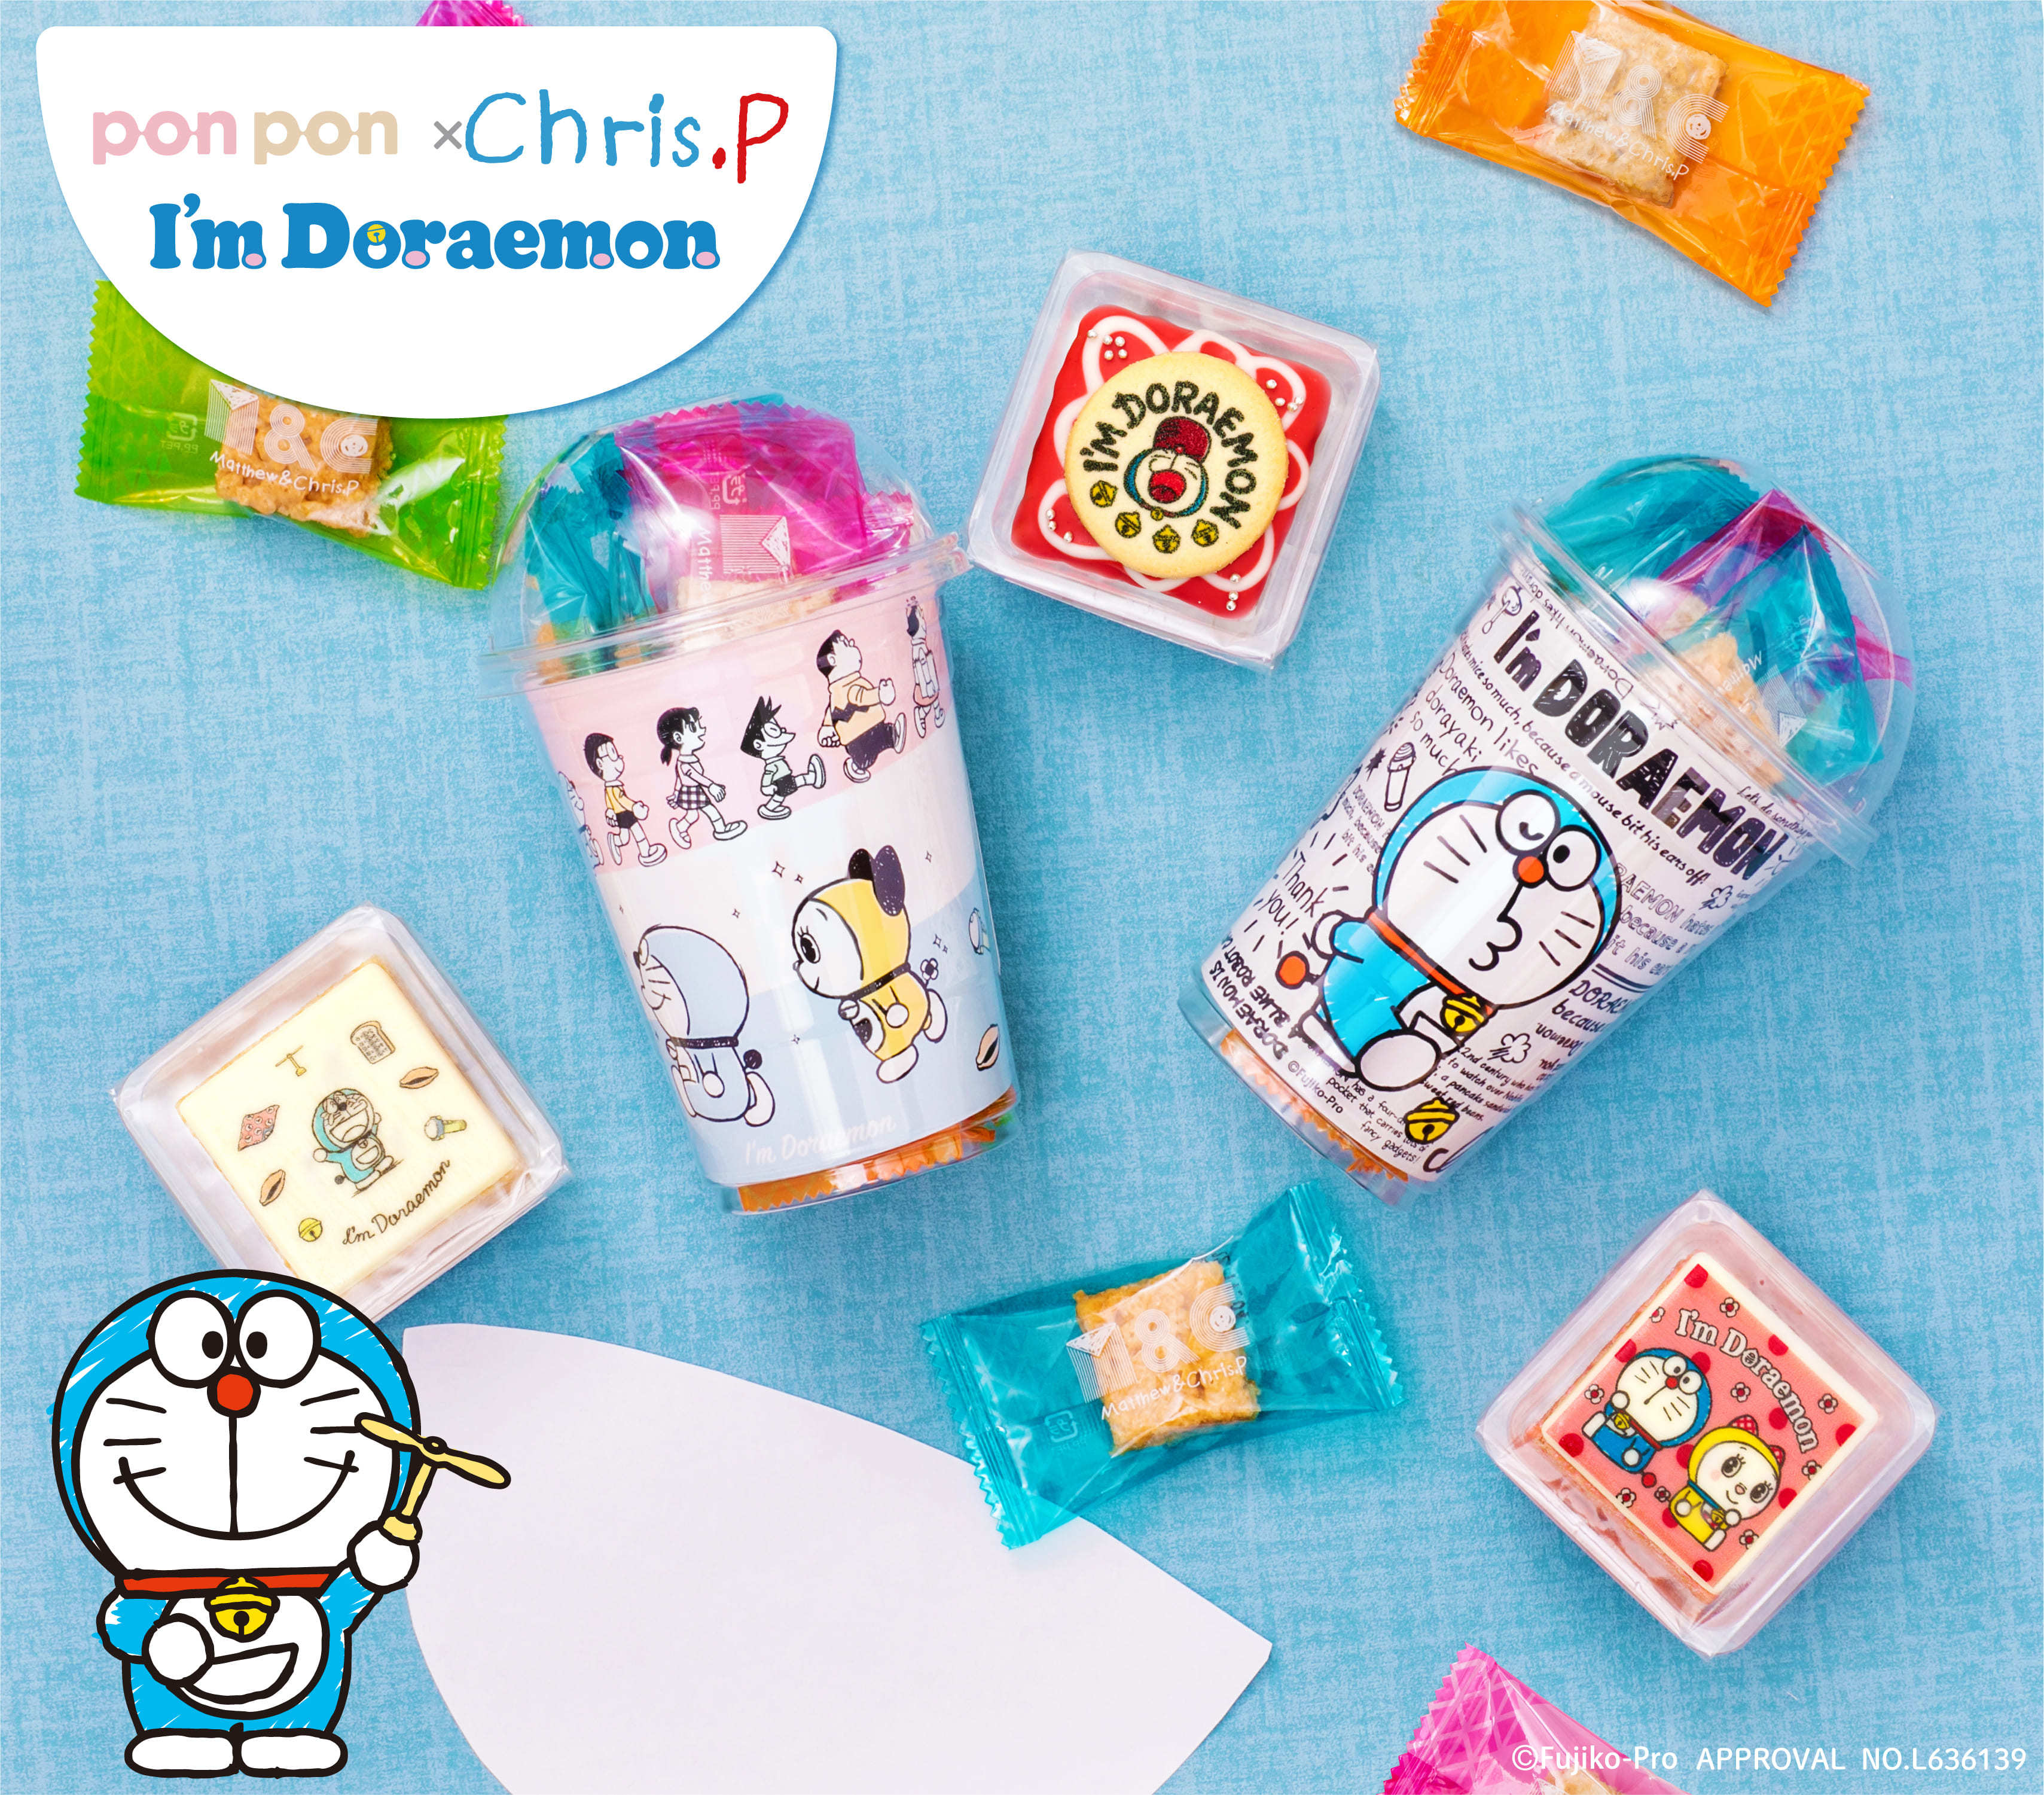 大阪銘菓「おこし」初のキャラクター商品　
Matthew & Chris.Pに「ドラえもん」デザインが登場！
I’m Doraemonのオリジナルデザインで11月1日から発売中！